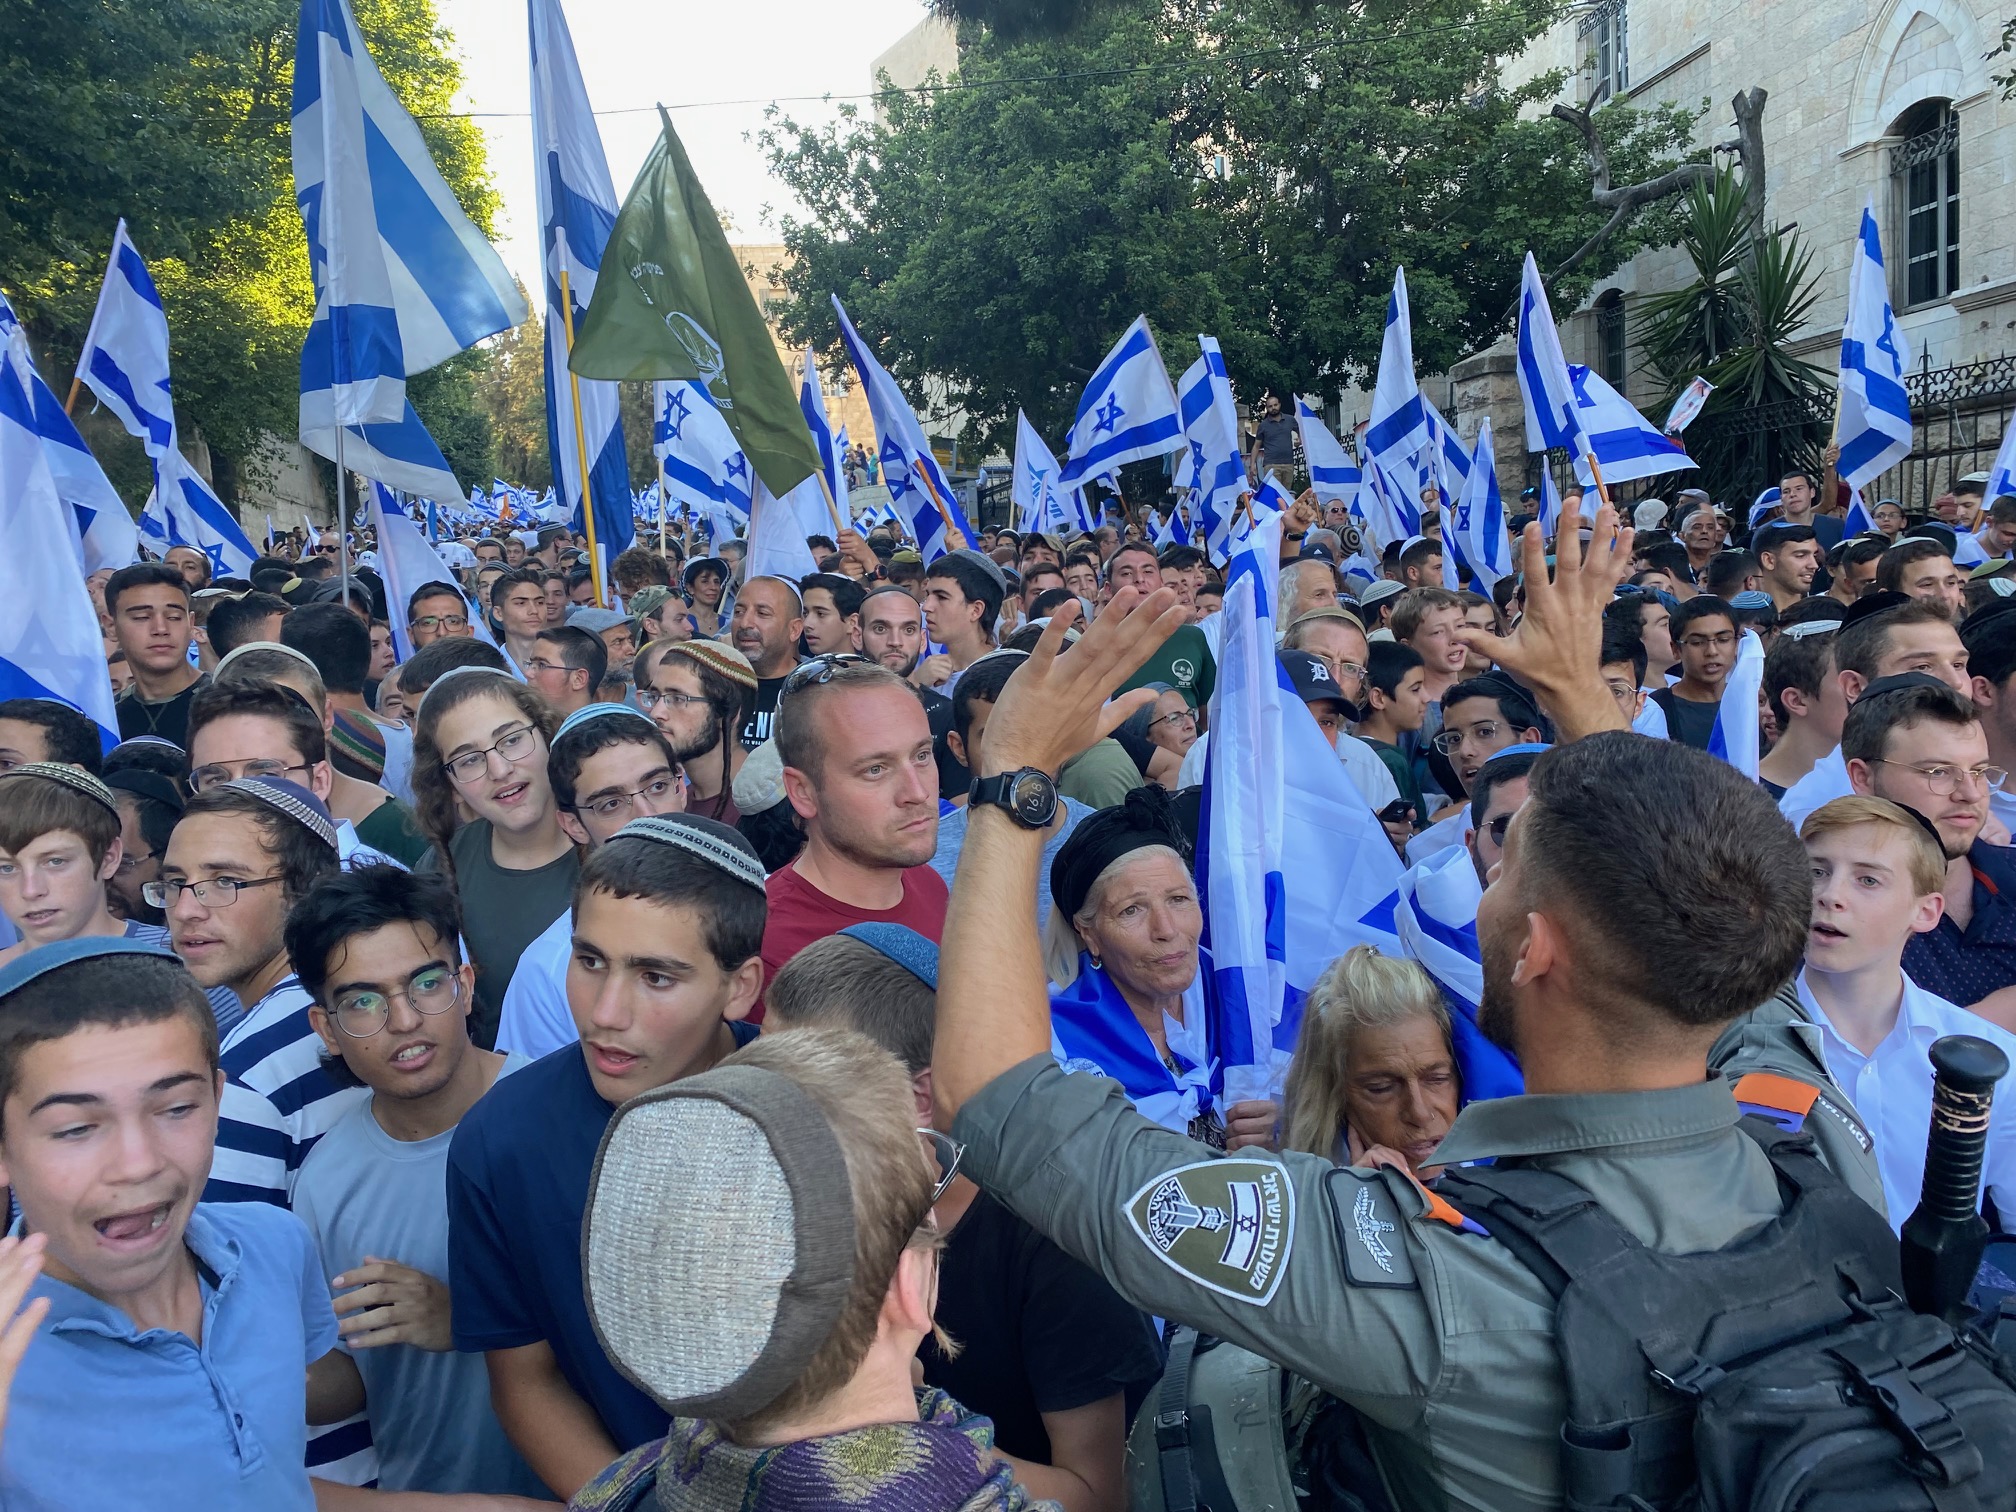 GERUSALEMME. La “Marcia delle bandiere” di Israele nella zona palestinese della città